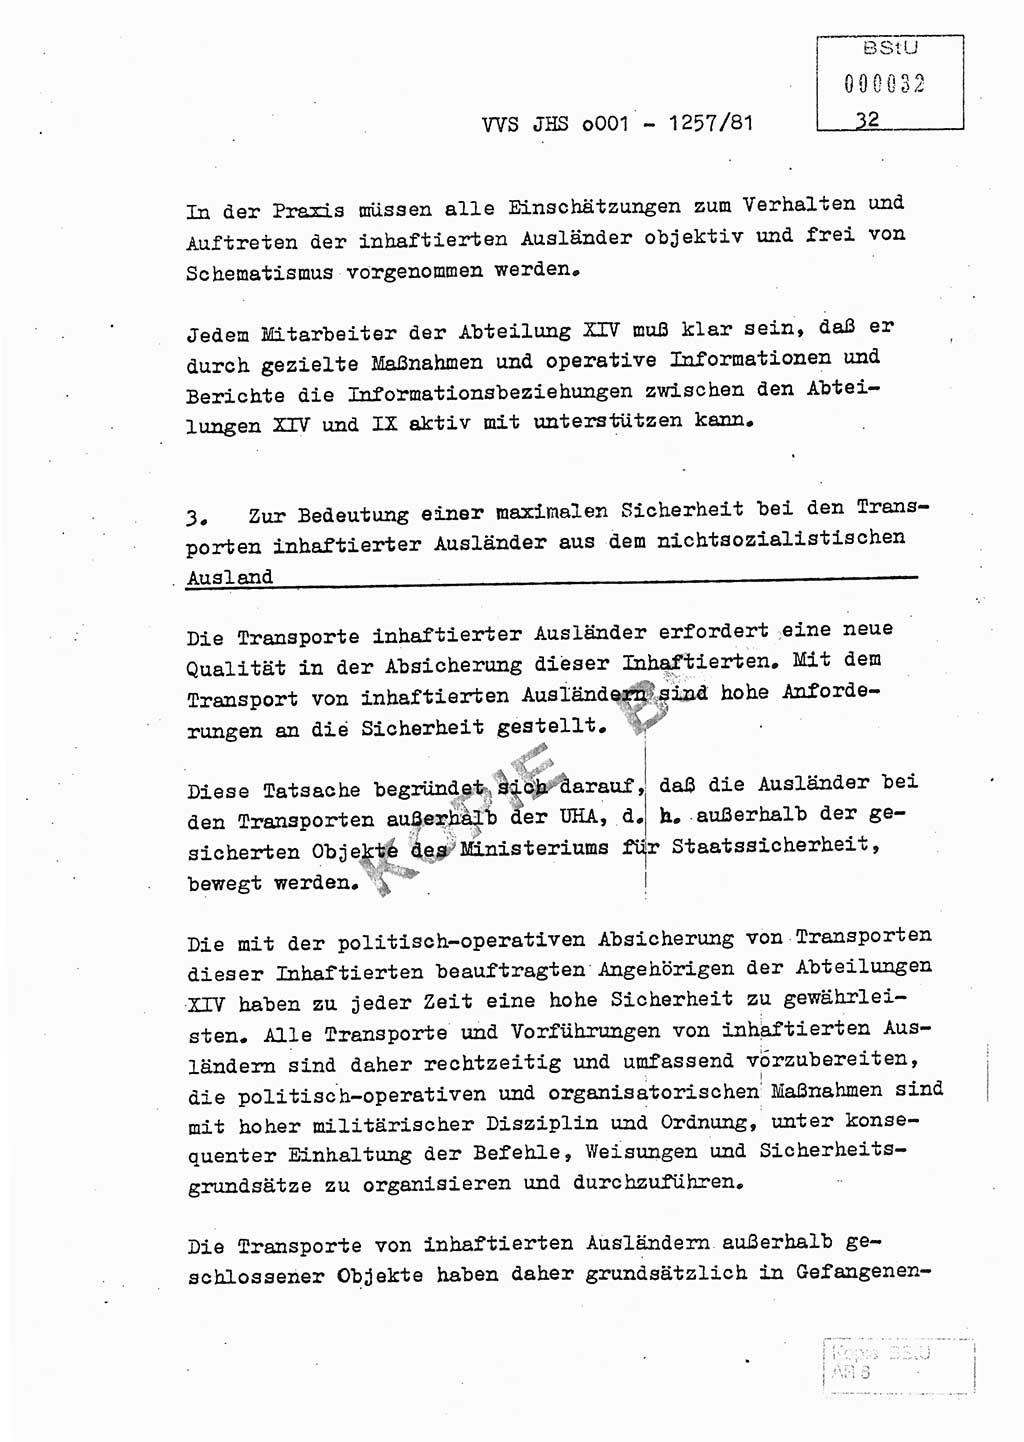 Fachschulabschlußarbeit Unterleutnant Dieter Möller (BV Rst. Abt. ⅩⅣ), Ministerium für Staatssicherheit (MfS) [Deutsche Demokratische Republik (DDR)], Juristische Hochschule (JHS), Vertrauliche Verschlußsache (VVS) o001-1257/81, Potsdam 1982, Seite 32 (FS-Abschl.-Arb. MfS DDR JHS VVS o001-1257/81 1982, S. 32)